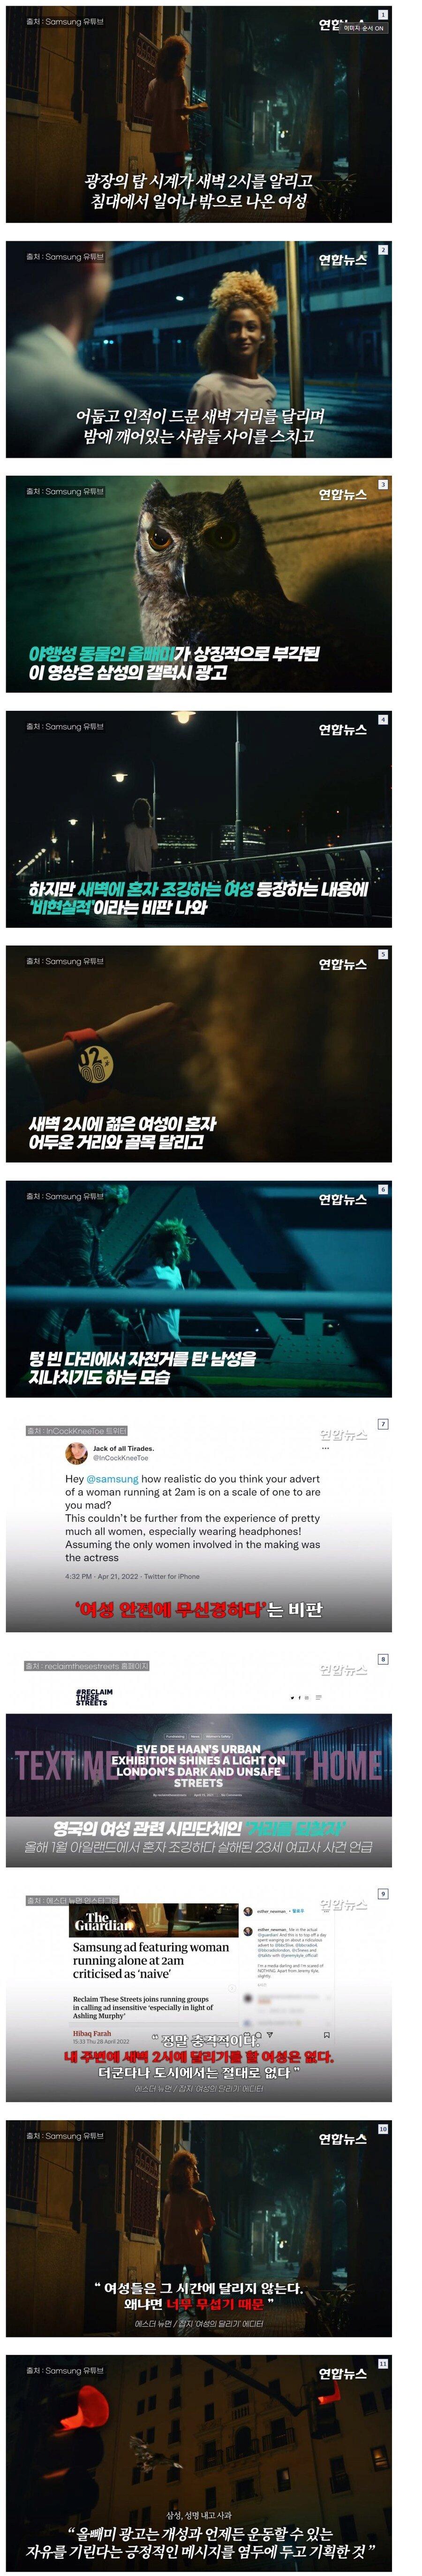 너무 한국에 맞췄다는 삼성 광고 논란